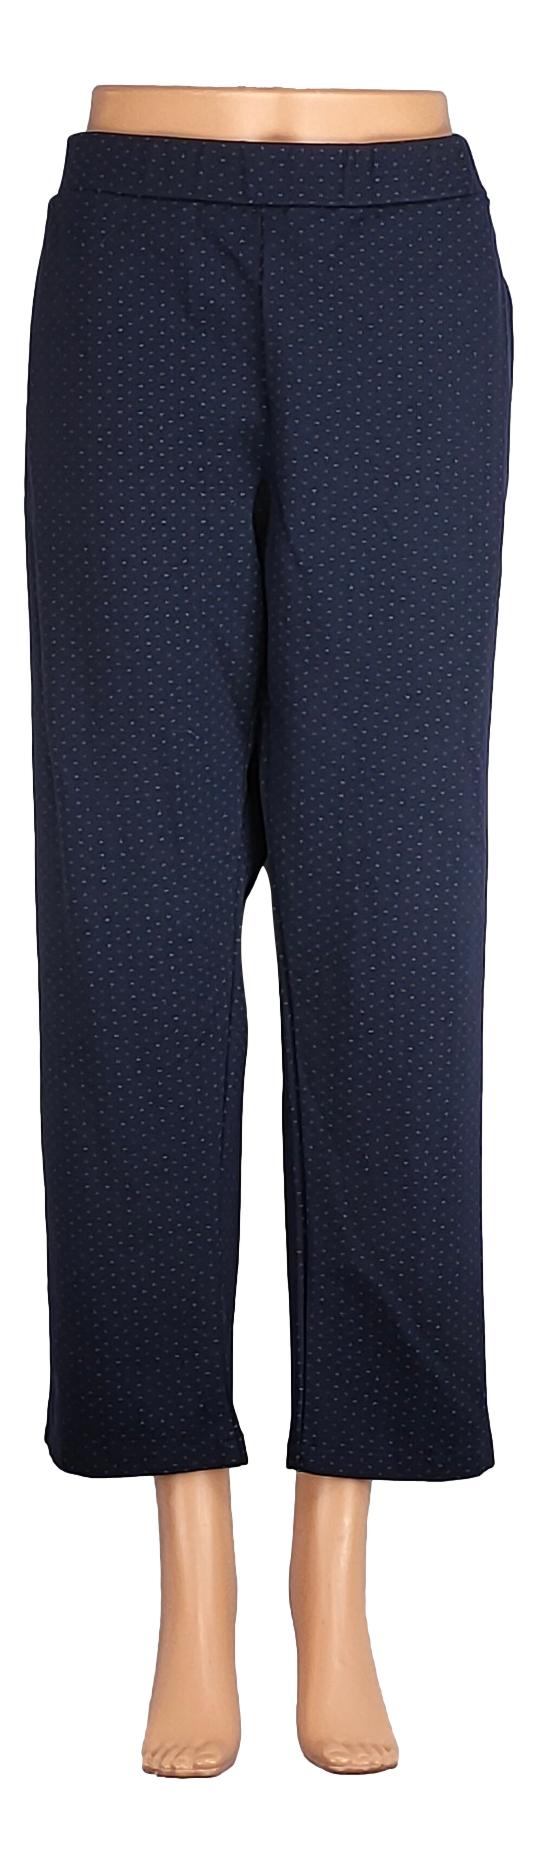 Pantalon Sans Marque -Taille 50